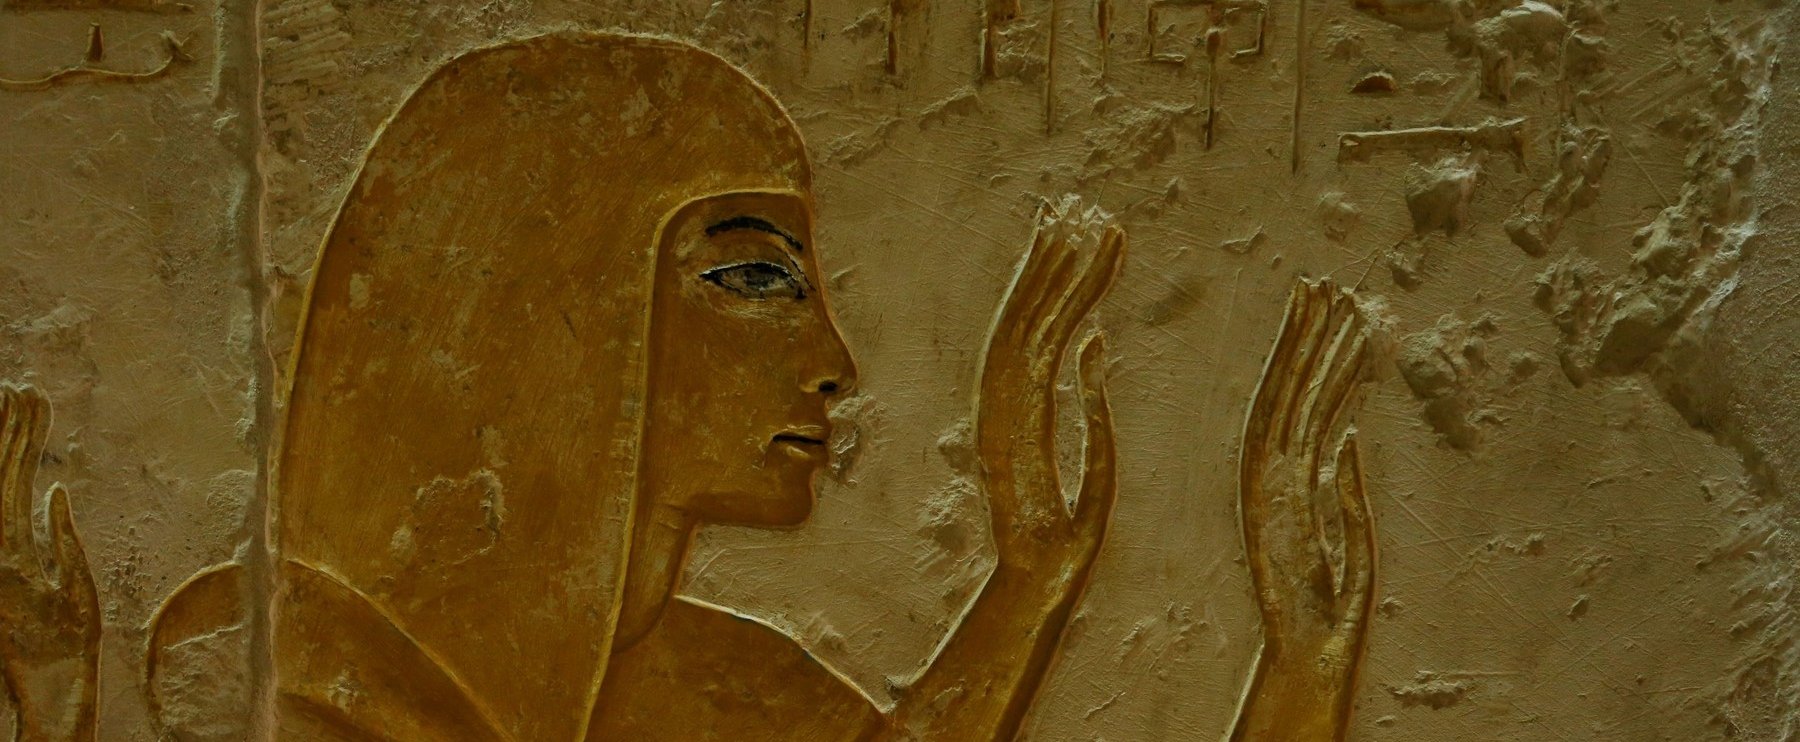 Eltorzult ezüstkoporsóból vakító fény áradt, Egyiptomban olyan dolog került elő a sírból, amelynek az értéke felbecsülhetetlen